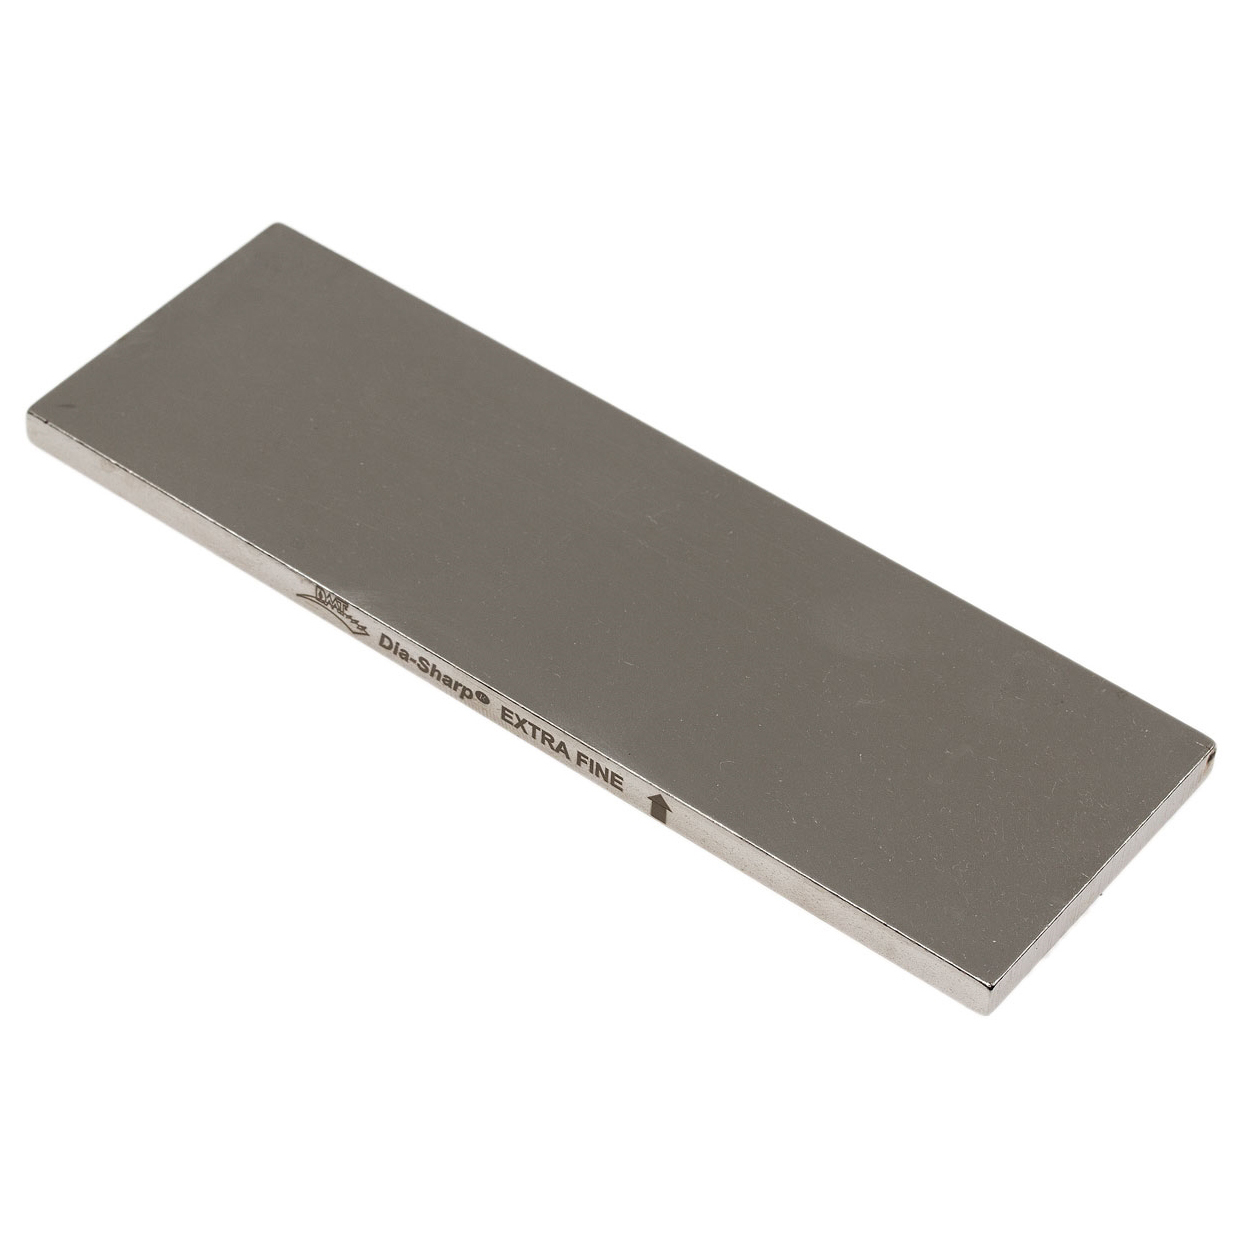 Алмазный брусок DMT Dia Sharp Extra-Fine, 1200 меш, 9 мкм, с резиновыми ножками от Ножиков